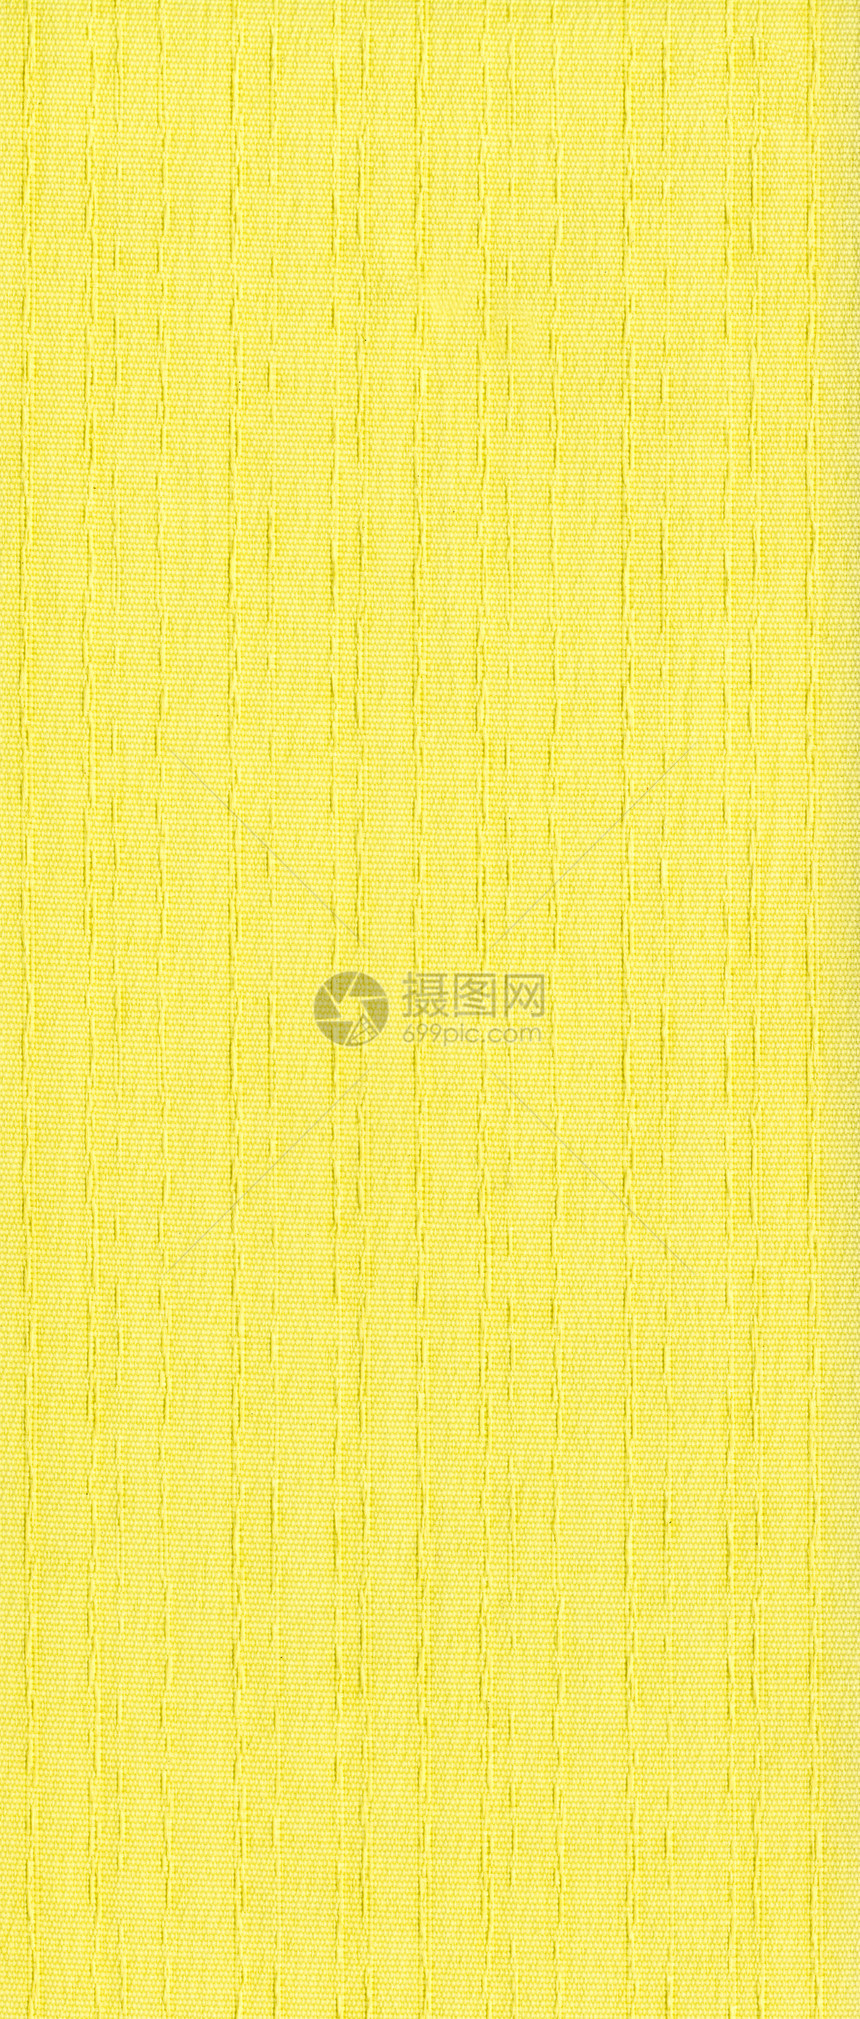 黄色结构纹理生产材料帆布纤维宏观亚麻编织麻布织物布料图片